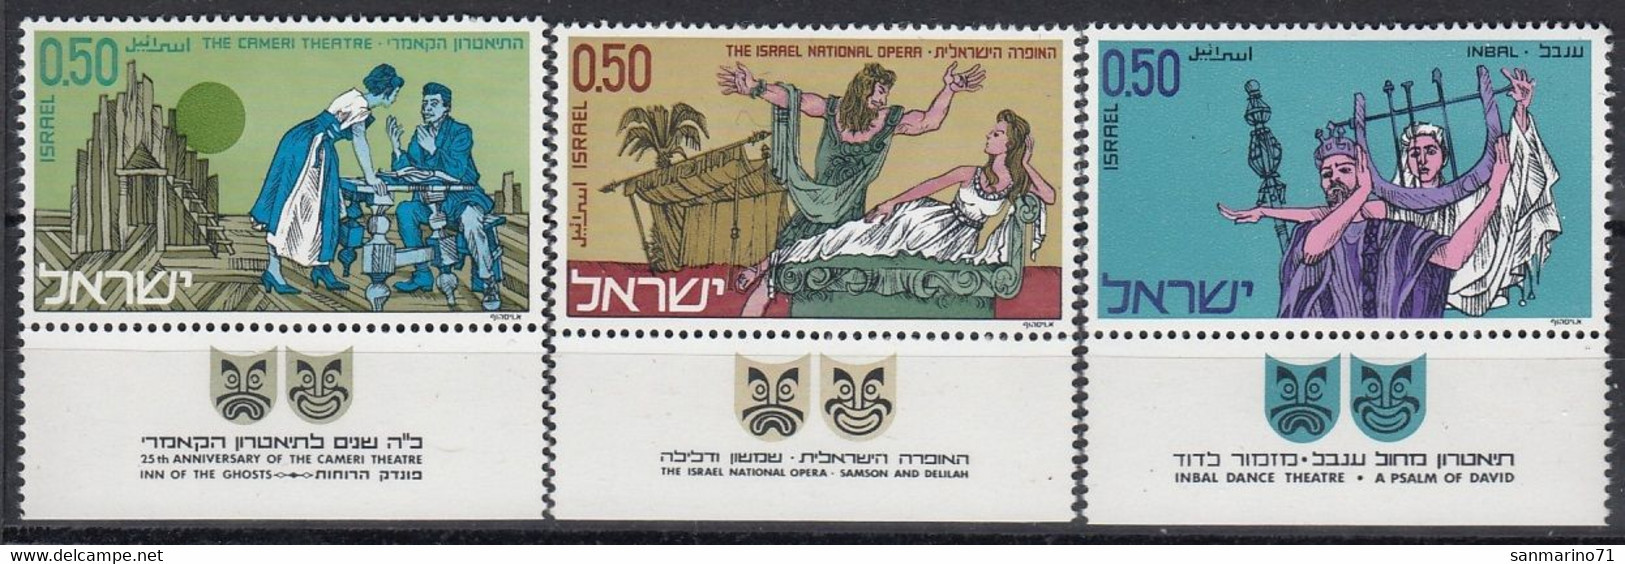 ISRAEL 495-497,unused - Neufs (avec Tabs)